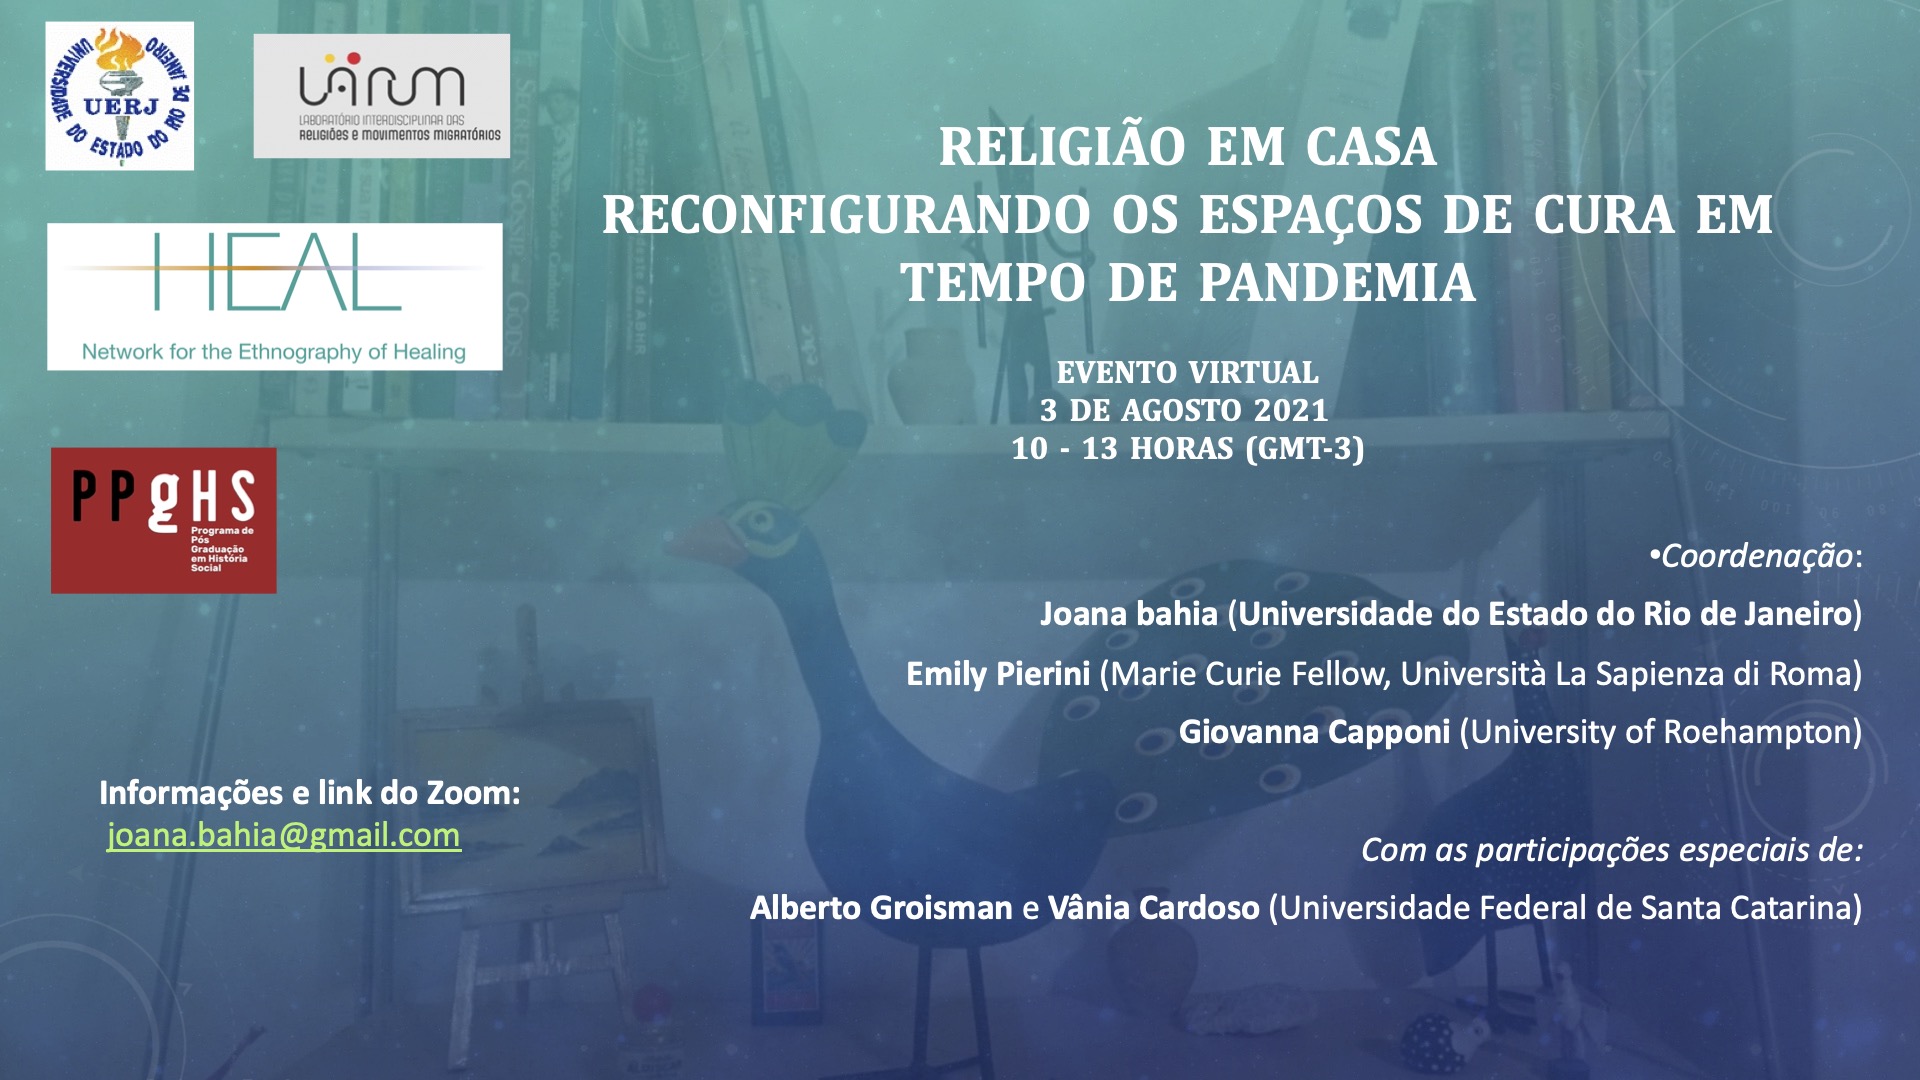 Workshop in Brazil (online): 'Religião em Casa: Reconfigurando os espaços de cura em tempo de pandemia'